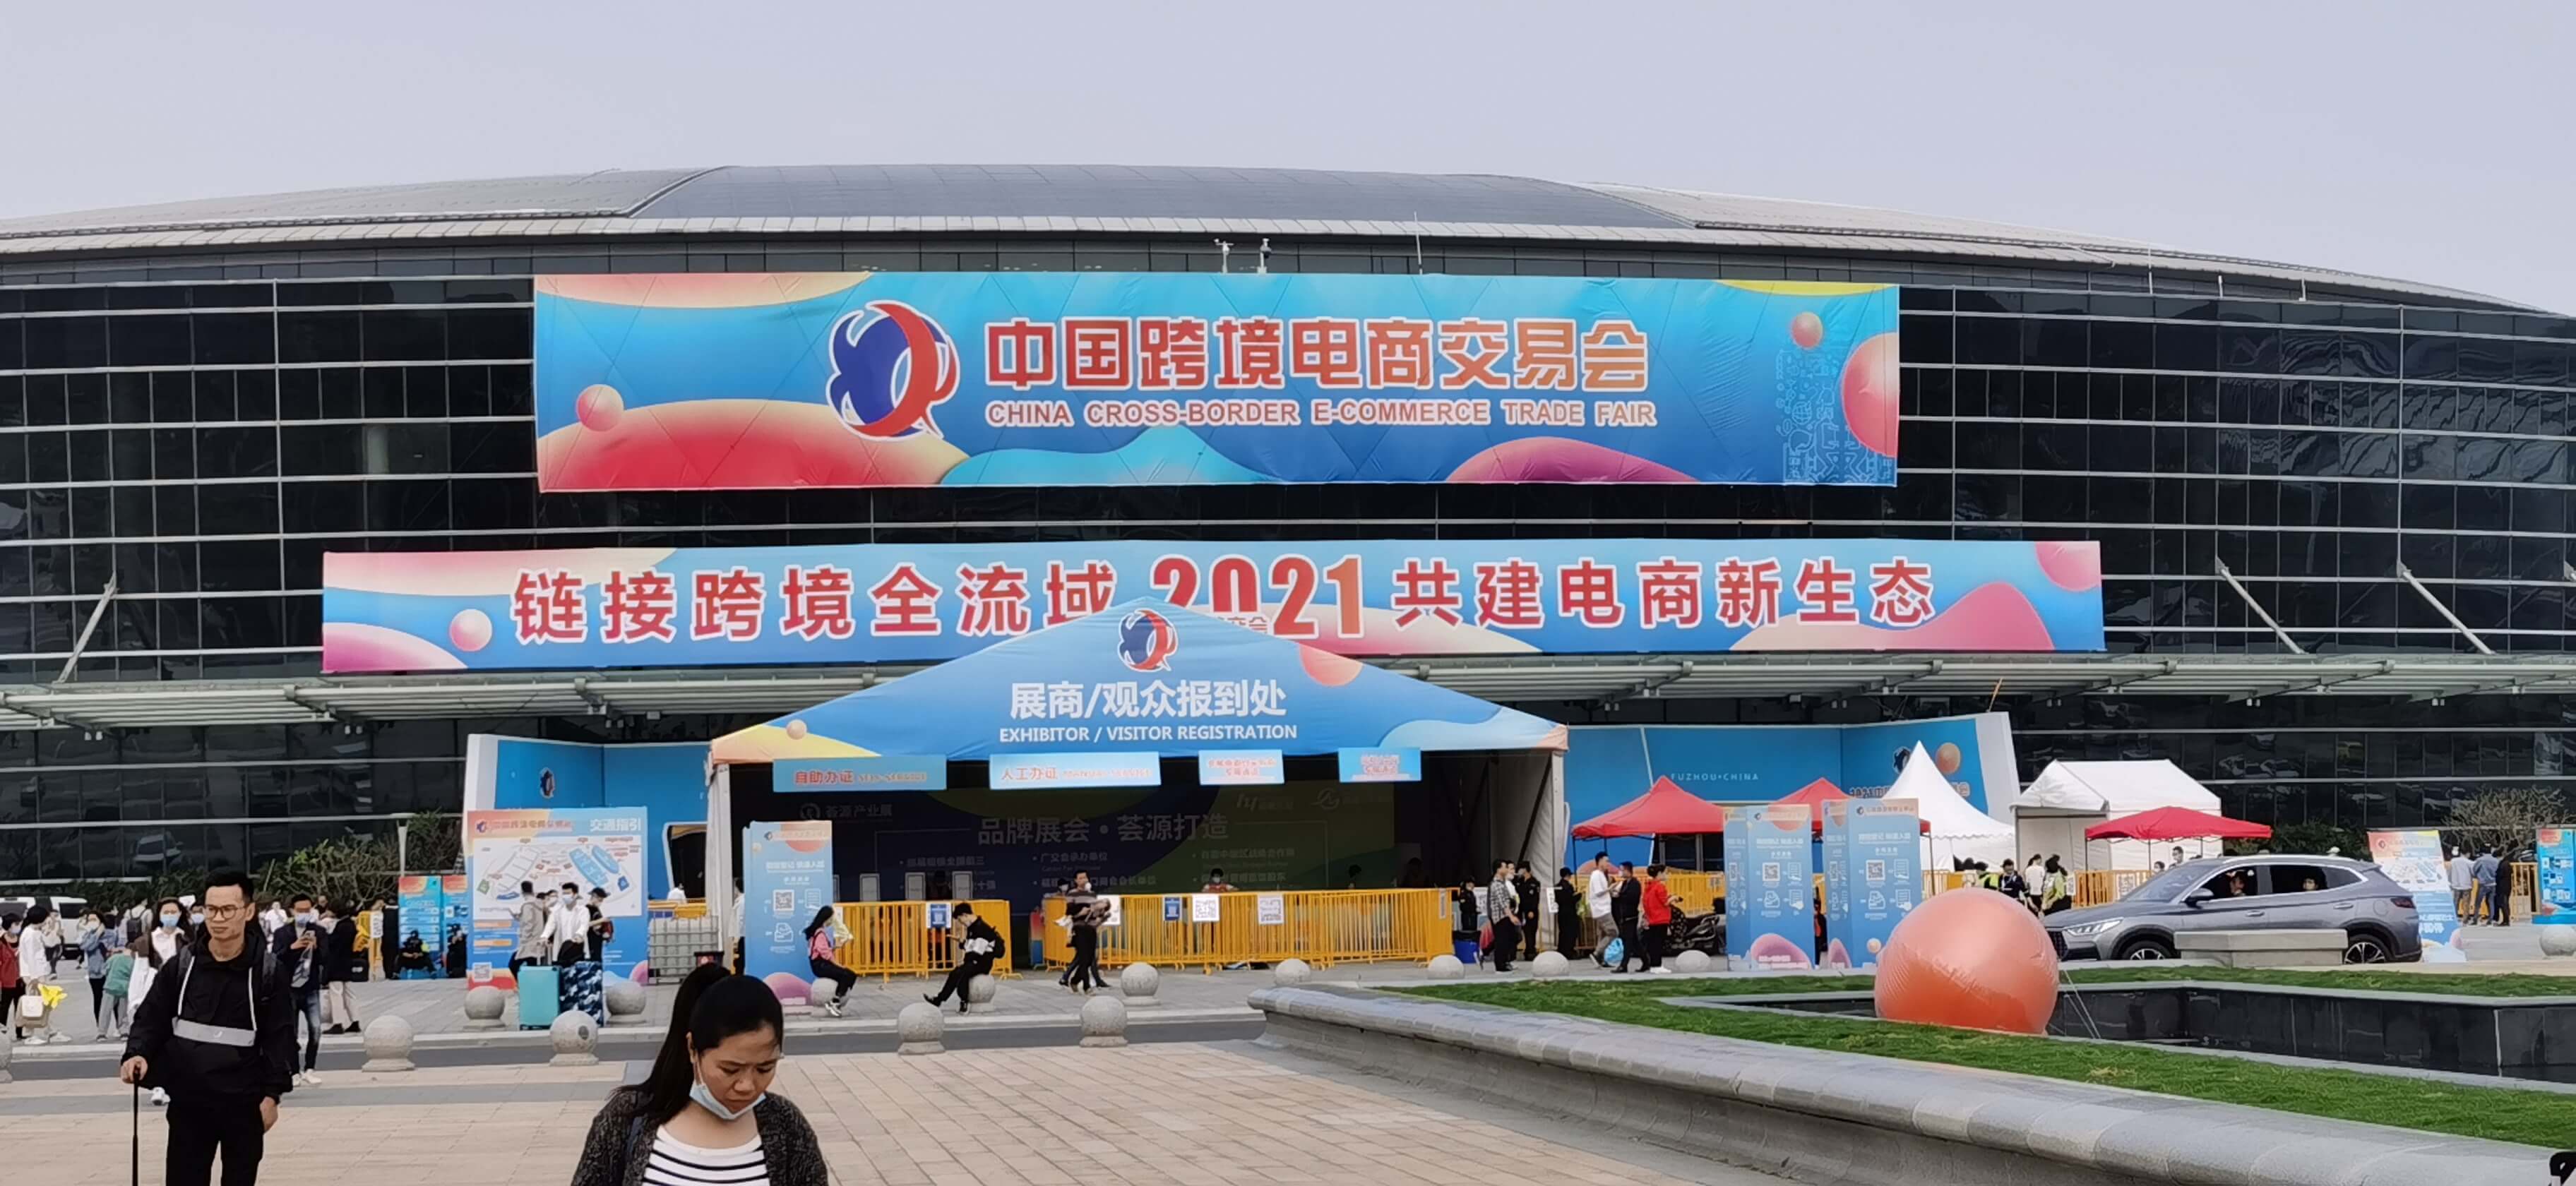 2021 Fuzhou Strait International Conference & Exhibition Center 2